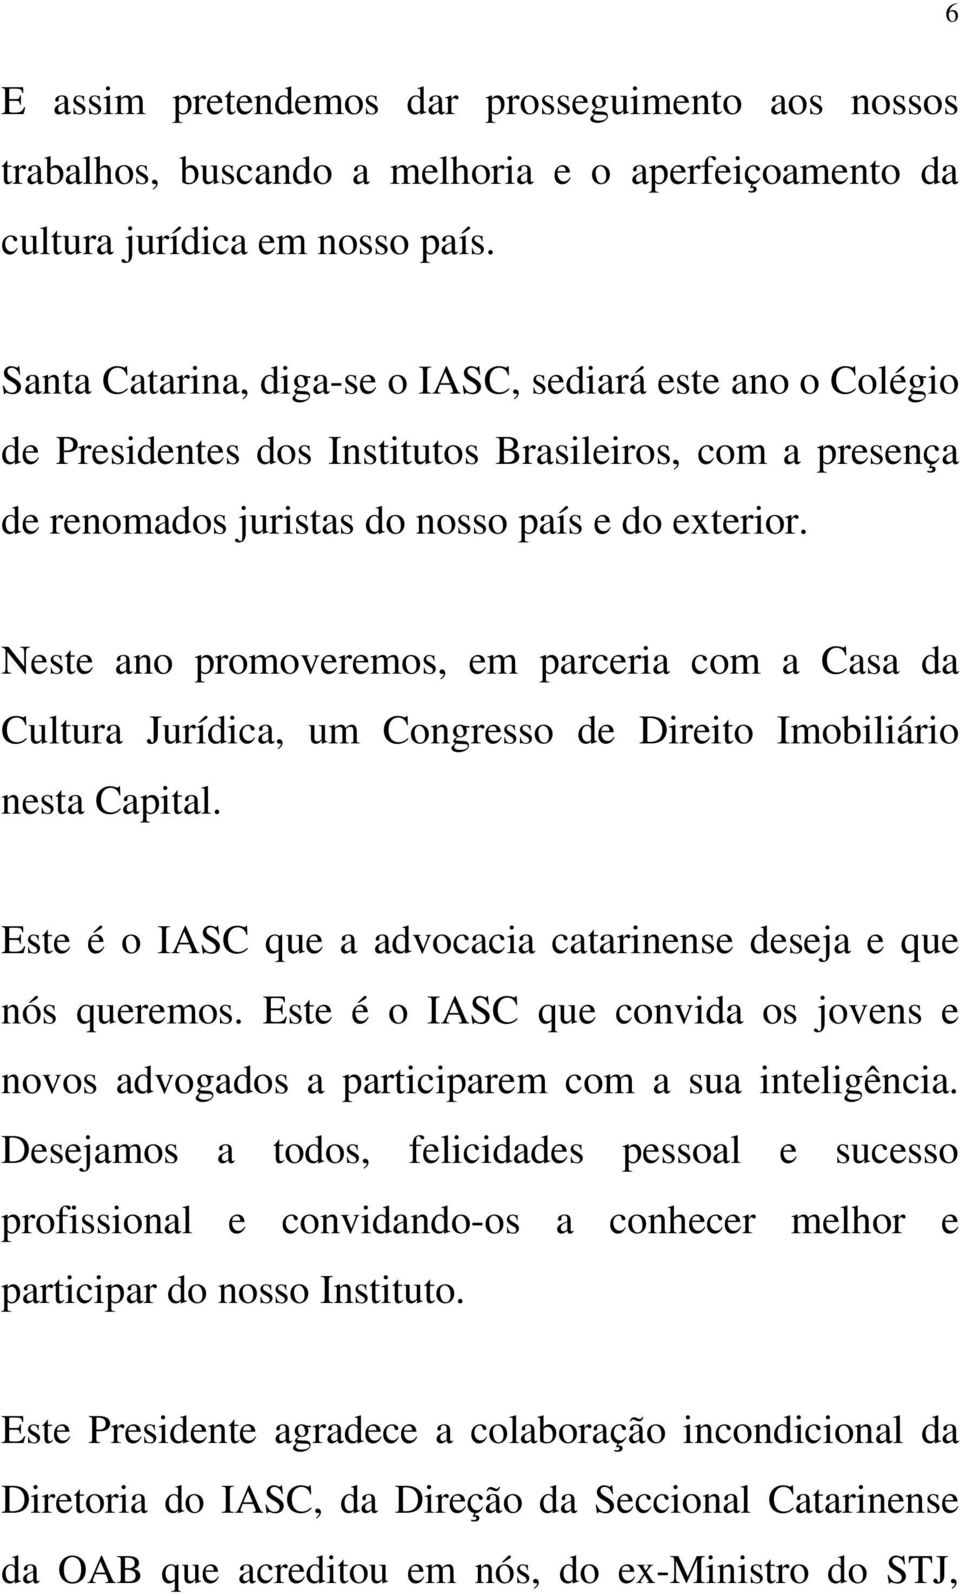 Neste ano promoveremos, em parceria com a Casa da Cultura Jurídica, um Congresso de Direito Imobiliário nesta Capital. Este é o IASC que a advocacia catarinense deseja e que nós queremos.